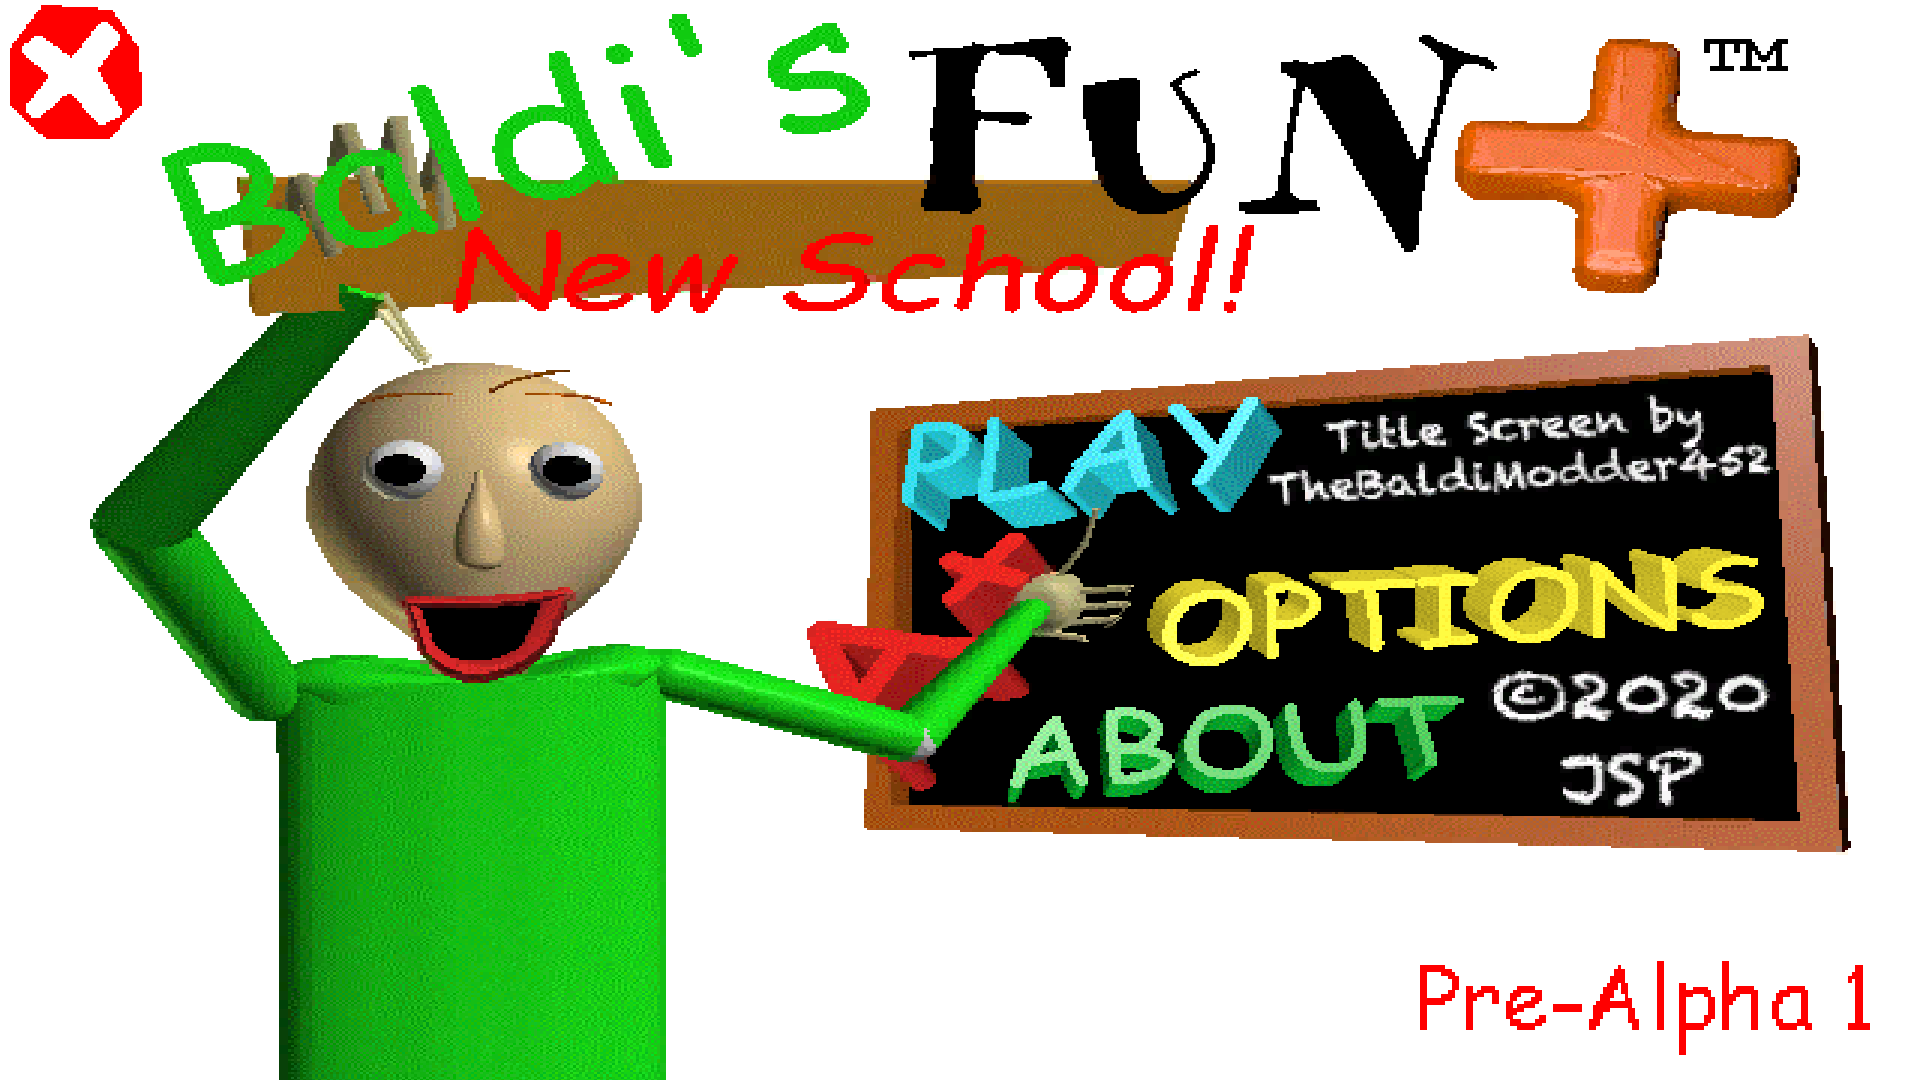 Baldi s fun new. Baldi fun New School. Baldi fun New School Remastered 1.4. Baldi Basics Plus School. Baldi's fun New School Remastered 1.4.3.1.